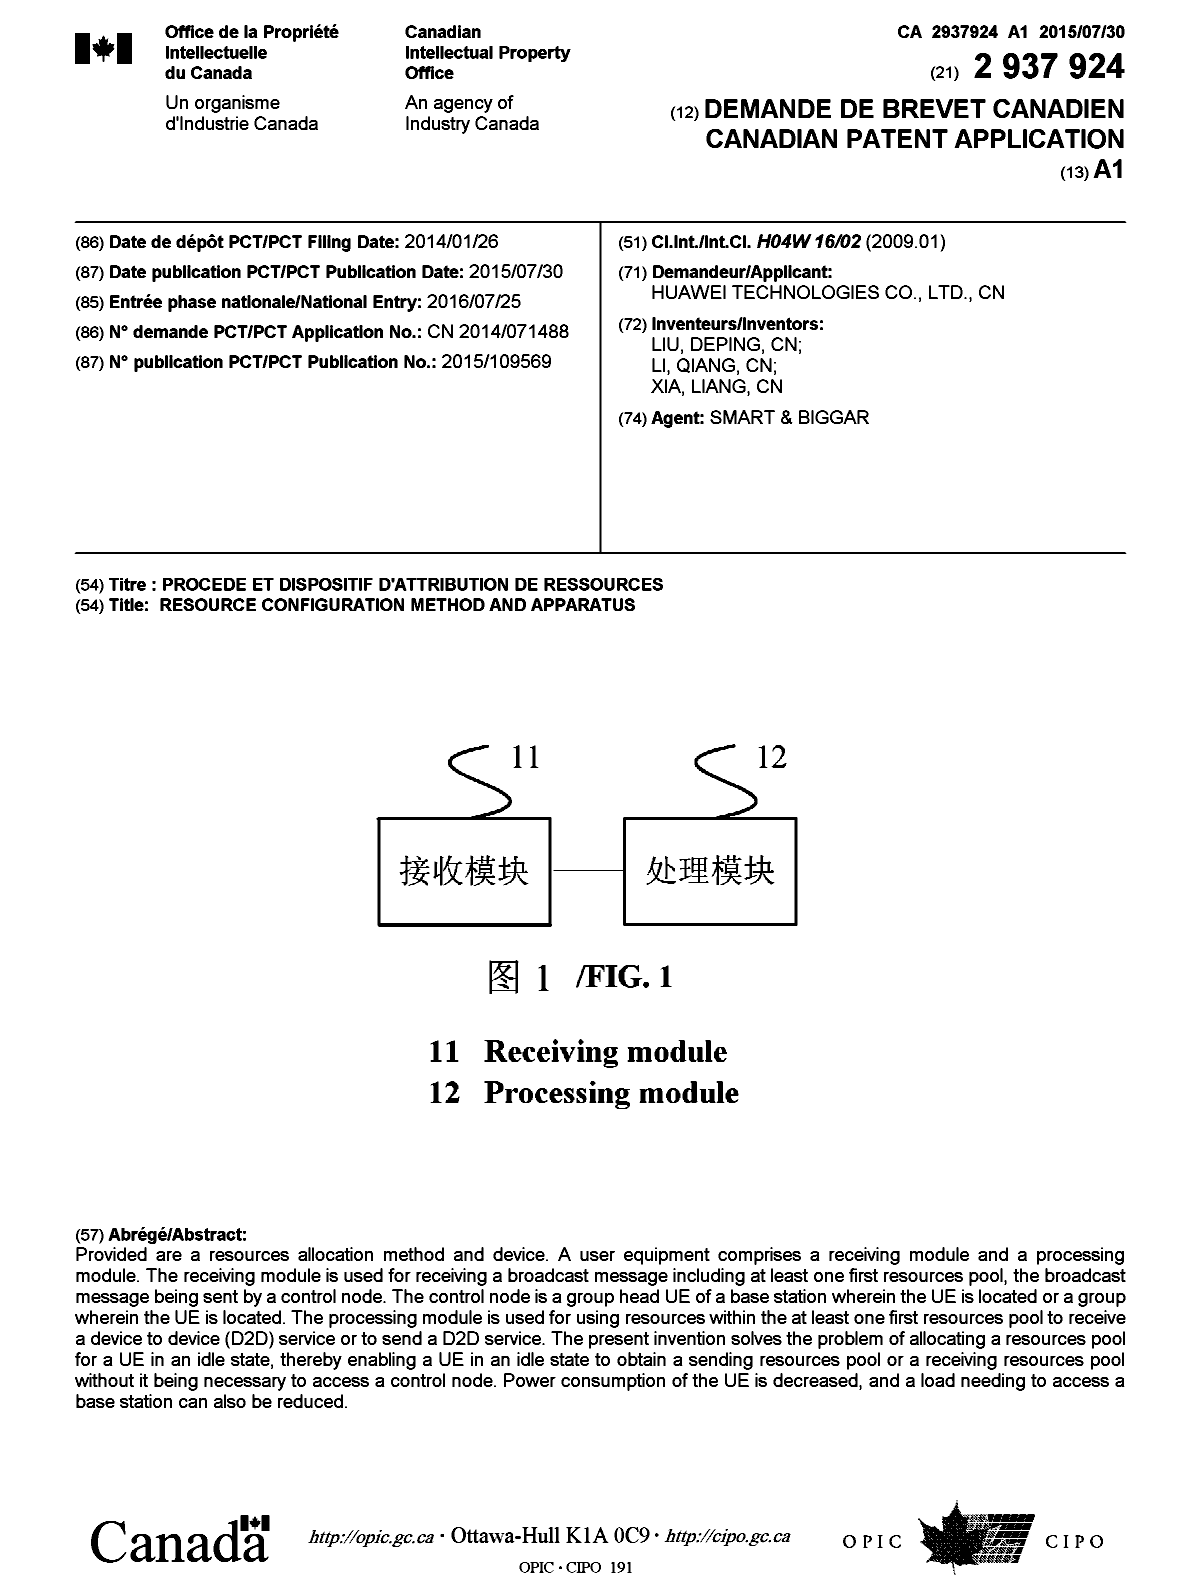 Document de brevet canadien 2937924. Page couverture 20160812. Image 1 de 1